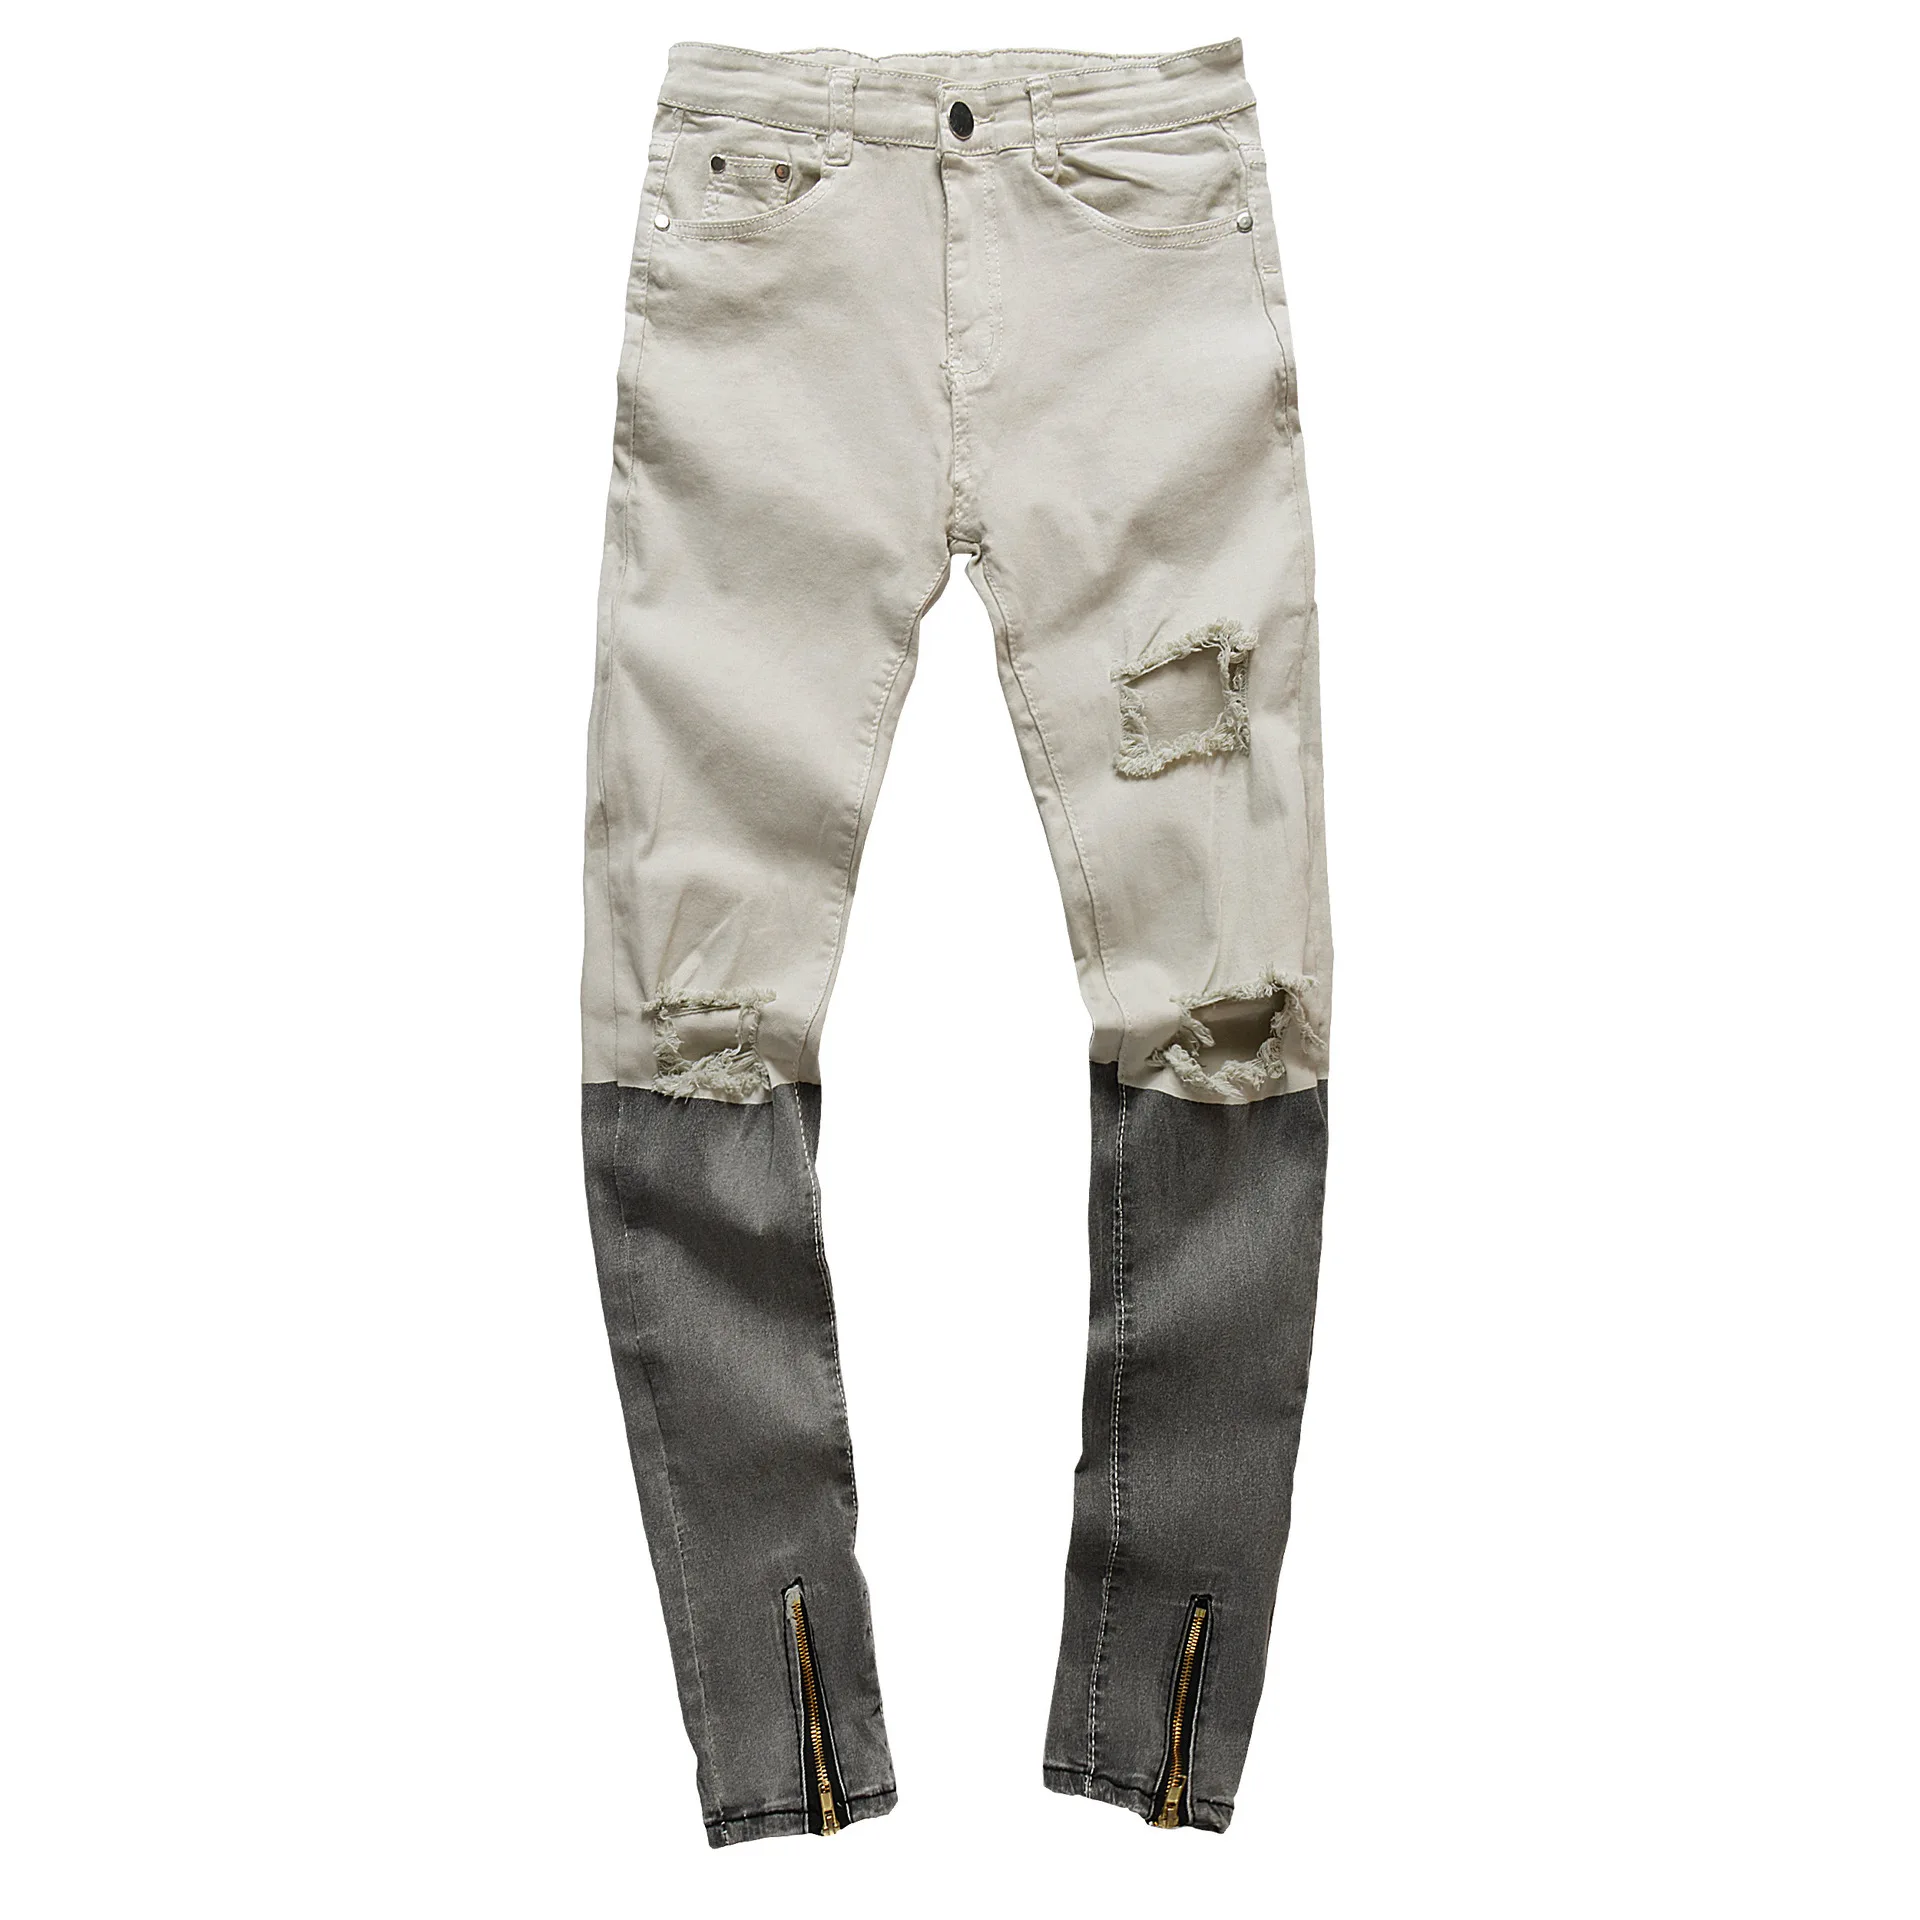 2019 новые весенне-летние мужские джинсы высокого качества, градиентные брендовые джинсы для мужчин, модные штаны с дырками, большие размеры